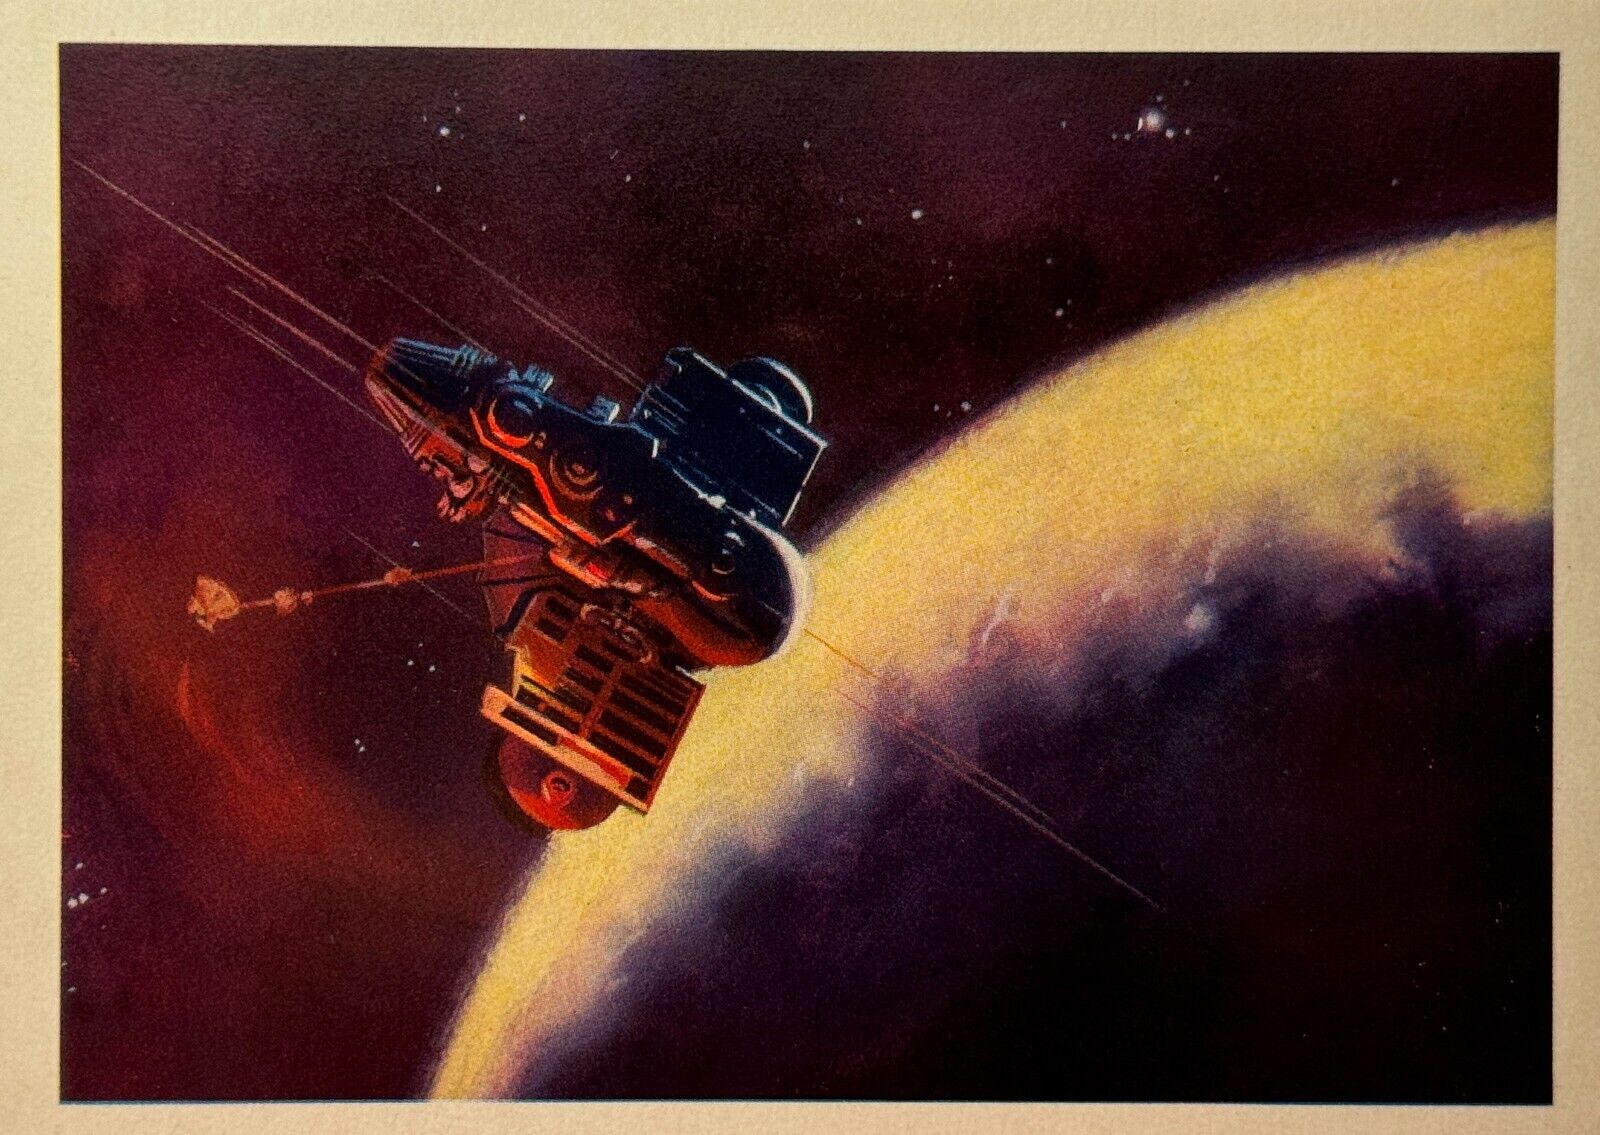 1971 Spaceship Planet of Mysteries Space Art Vintage Postcard